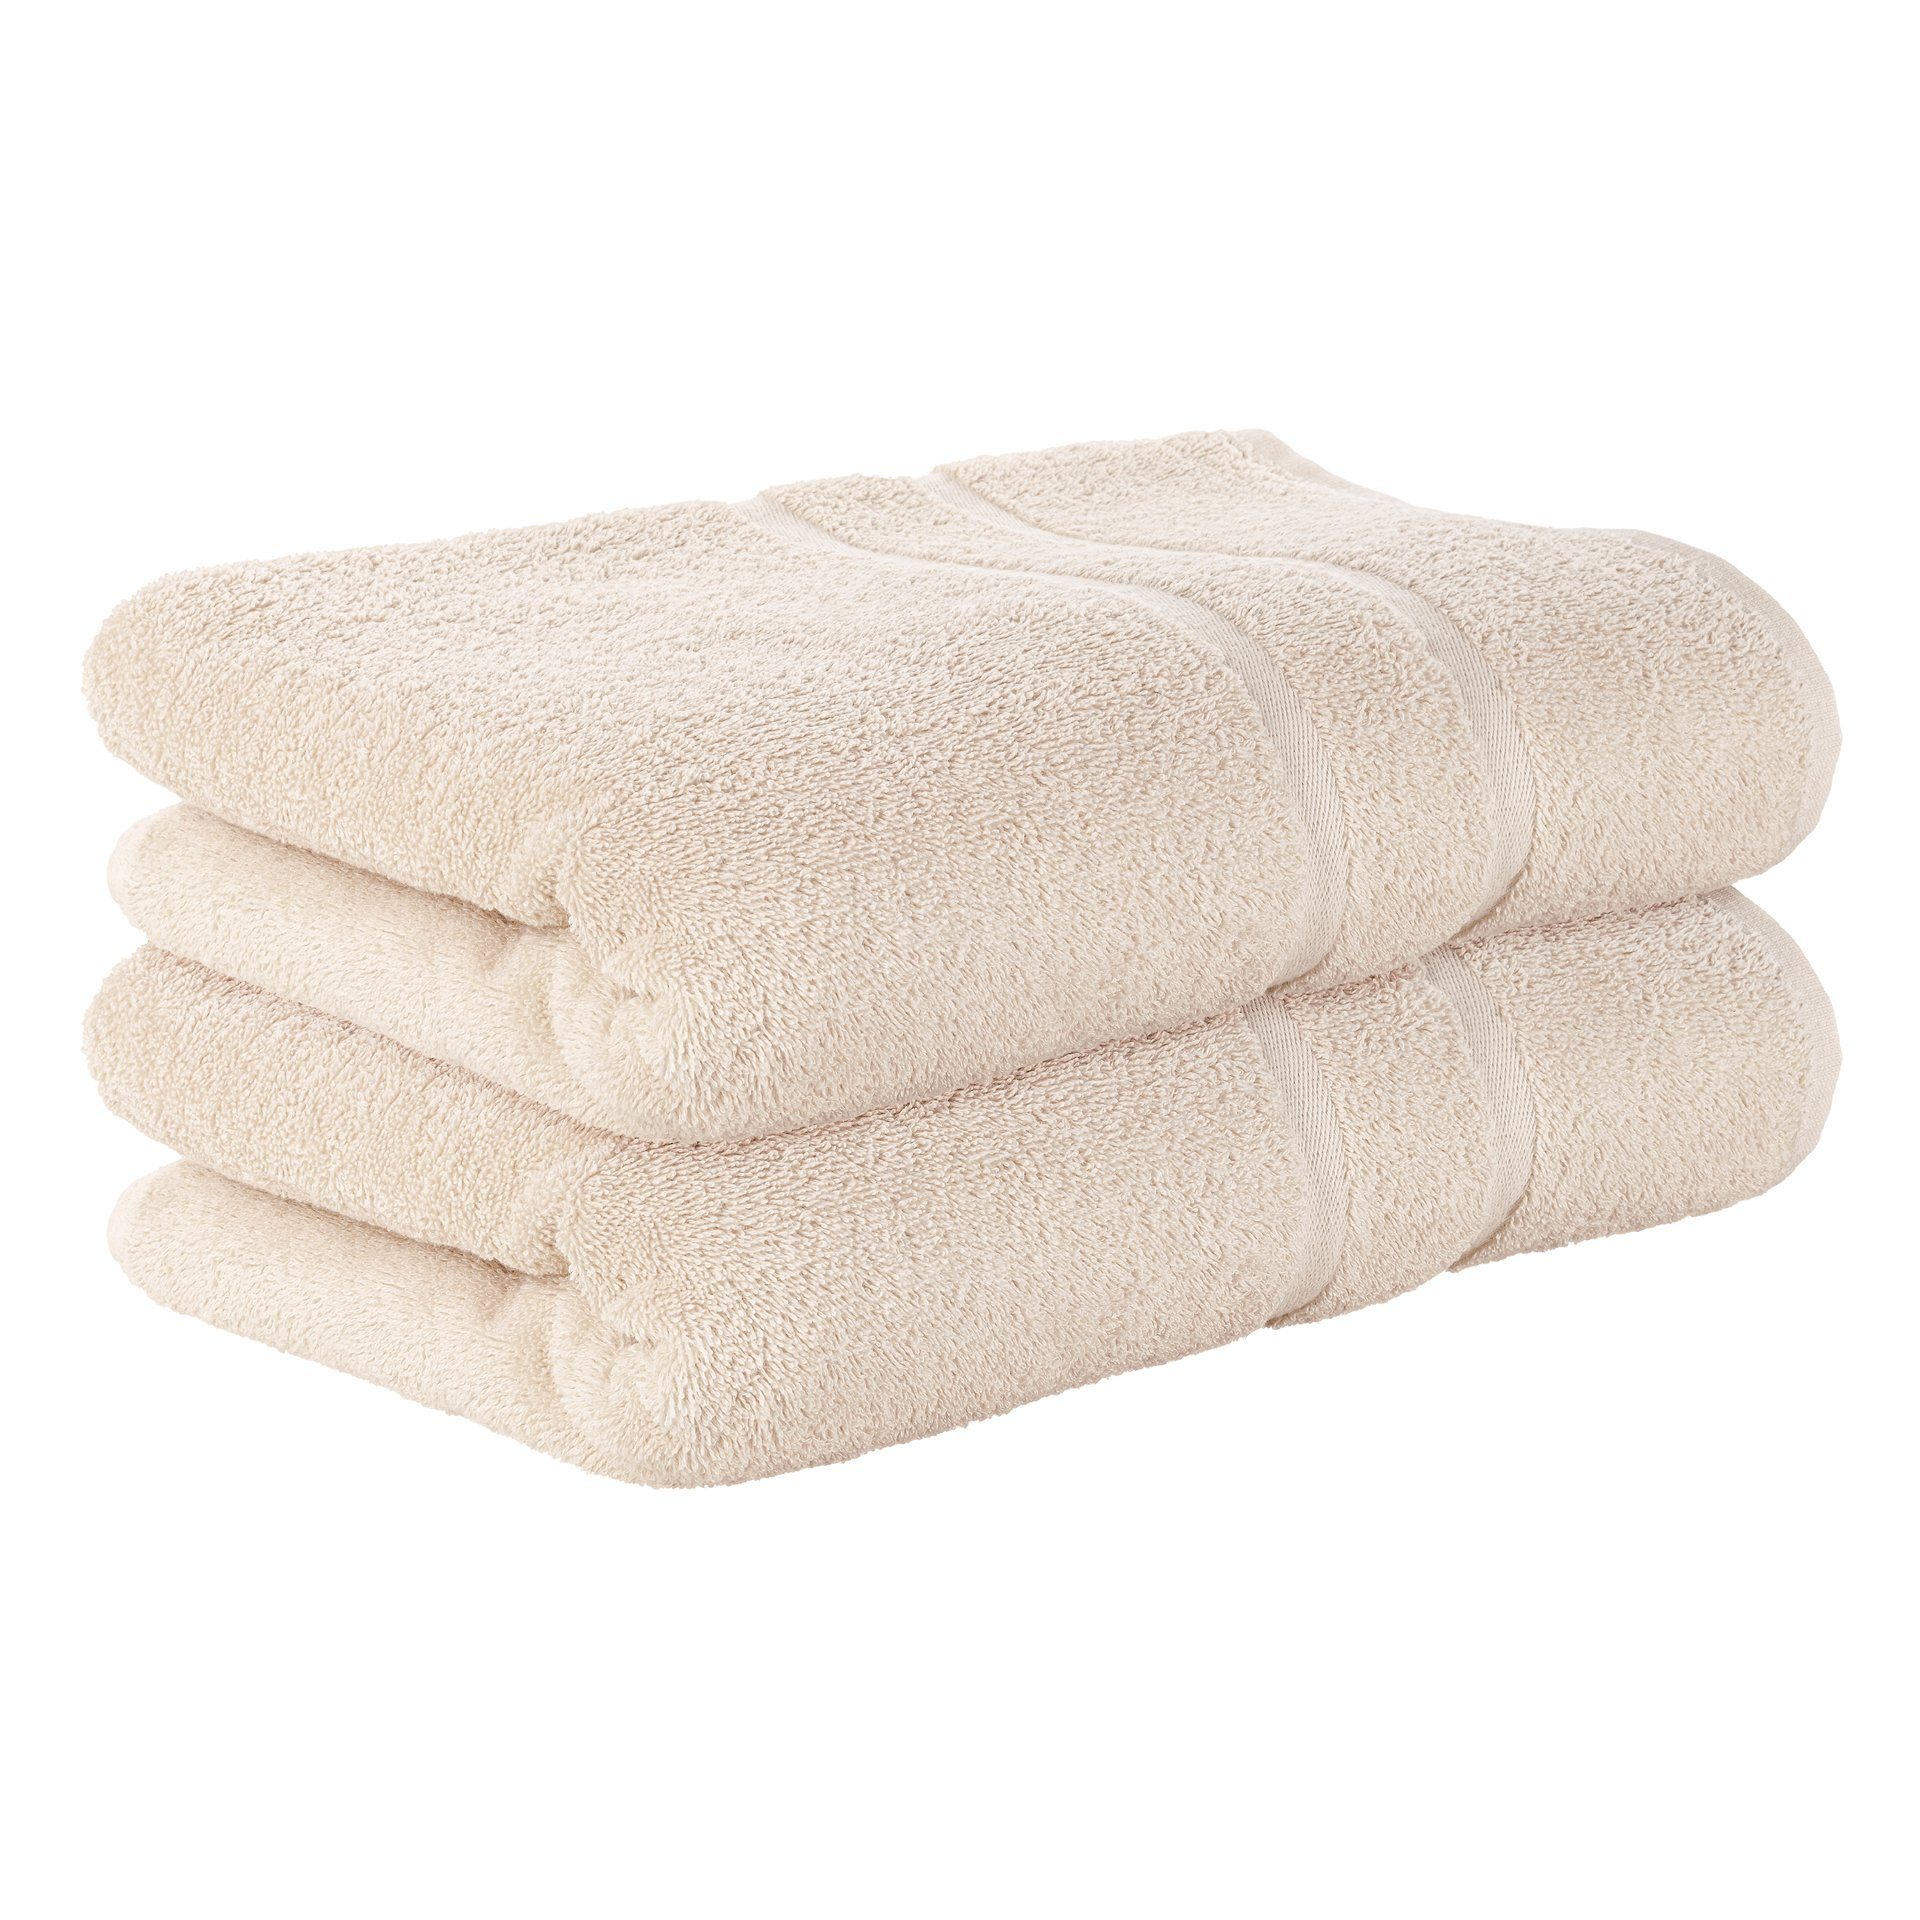 StickandShine Handtuch 2er Set Premium Frottee Handtuch 50x100 cm in 500g/m² aus 100% Baumwolle (2 Stück), 100% Baumwolle 500GSM Frottee Creme